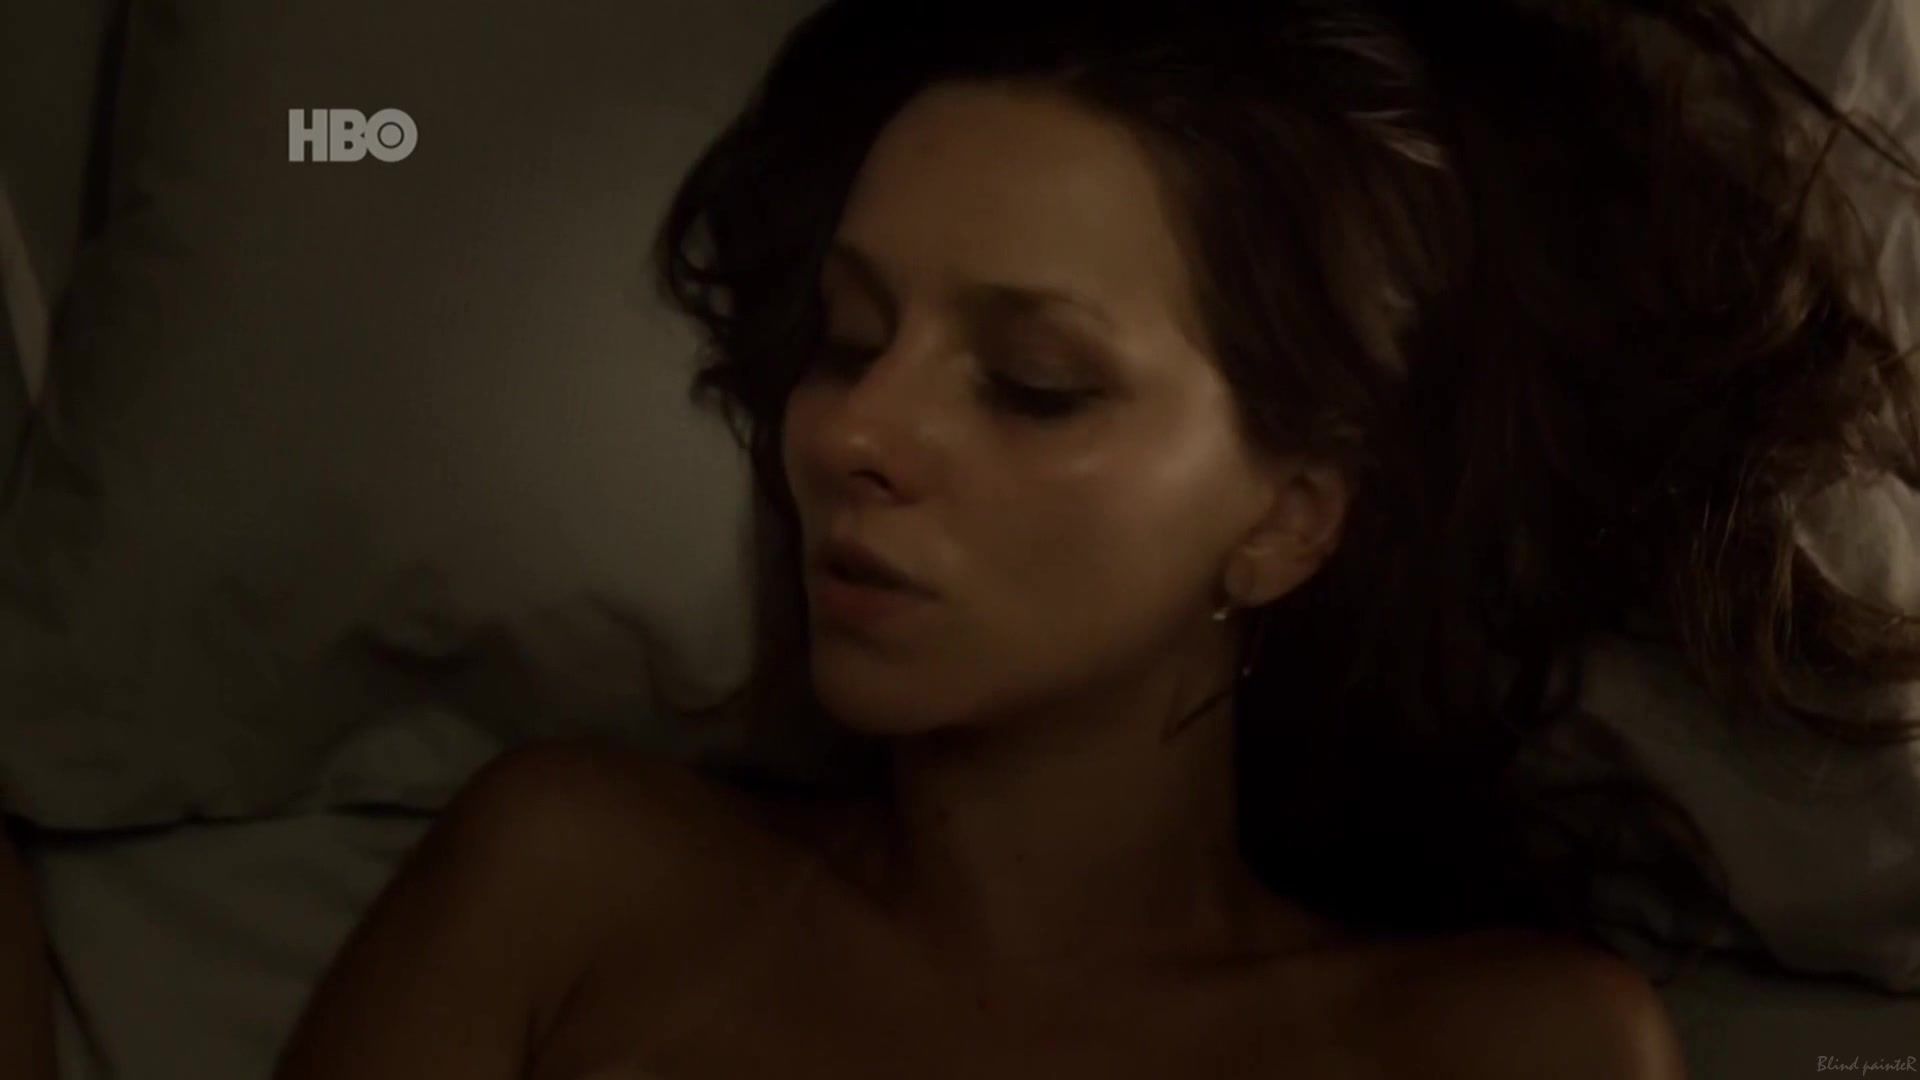 Hot Girl Sex Scene Leticia Tomazella nude - O Negocio S02E05 (2014) Massive